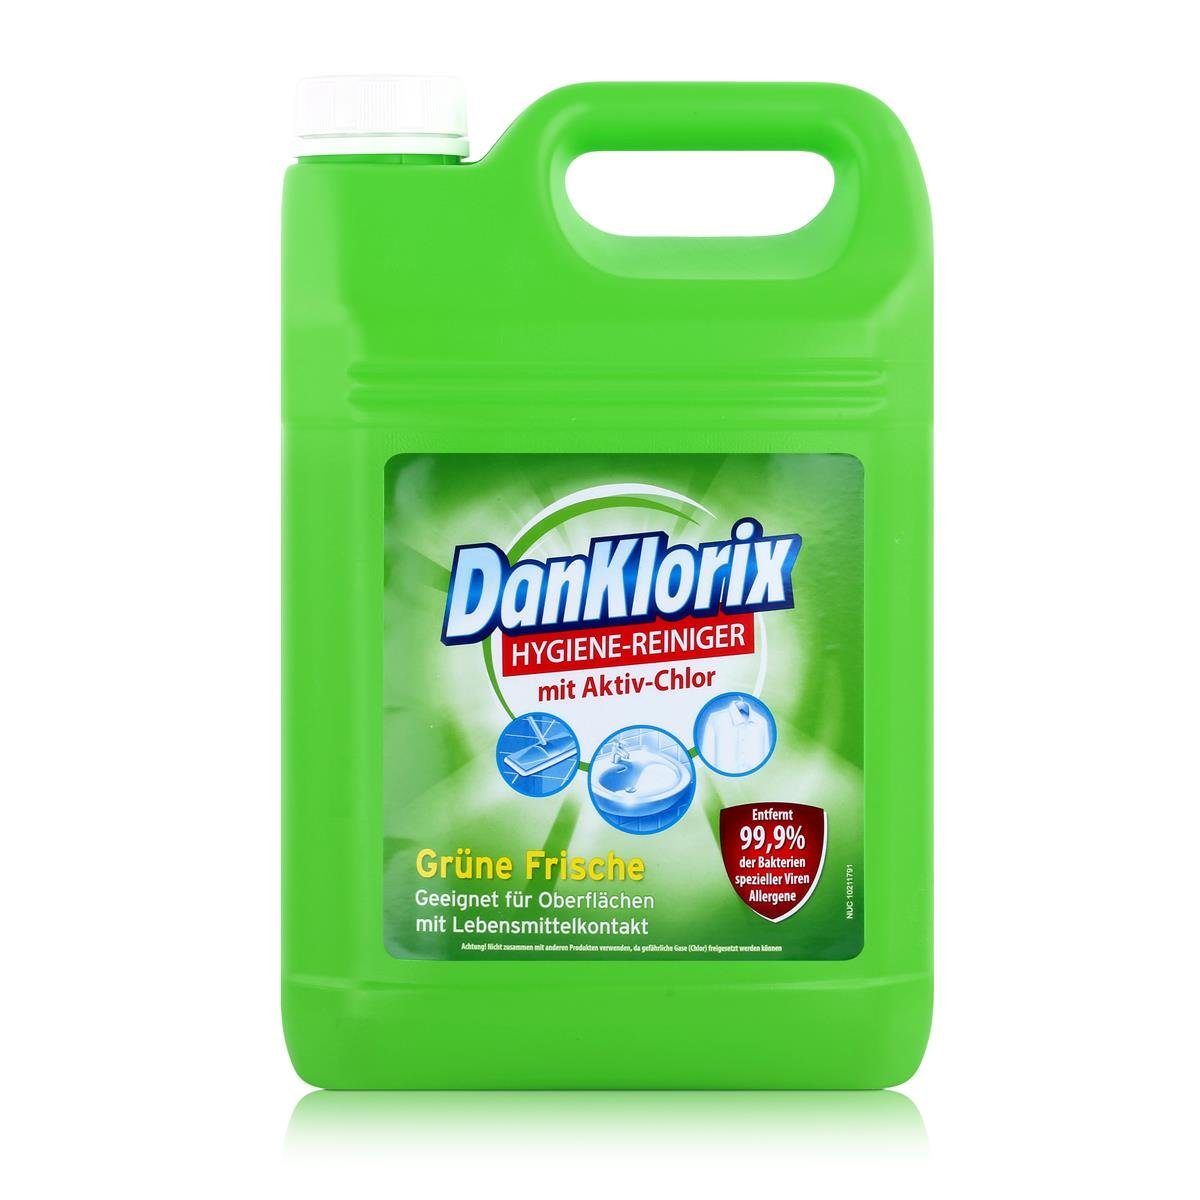 DanKlorix DanKlorix Hygiene-Reiniger grüne Frische mit Aktiv-Chlor 5L (1er Pack) Allzweckreiniger